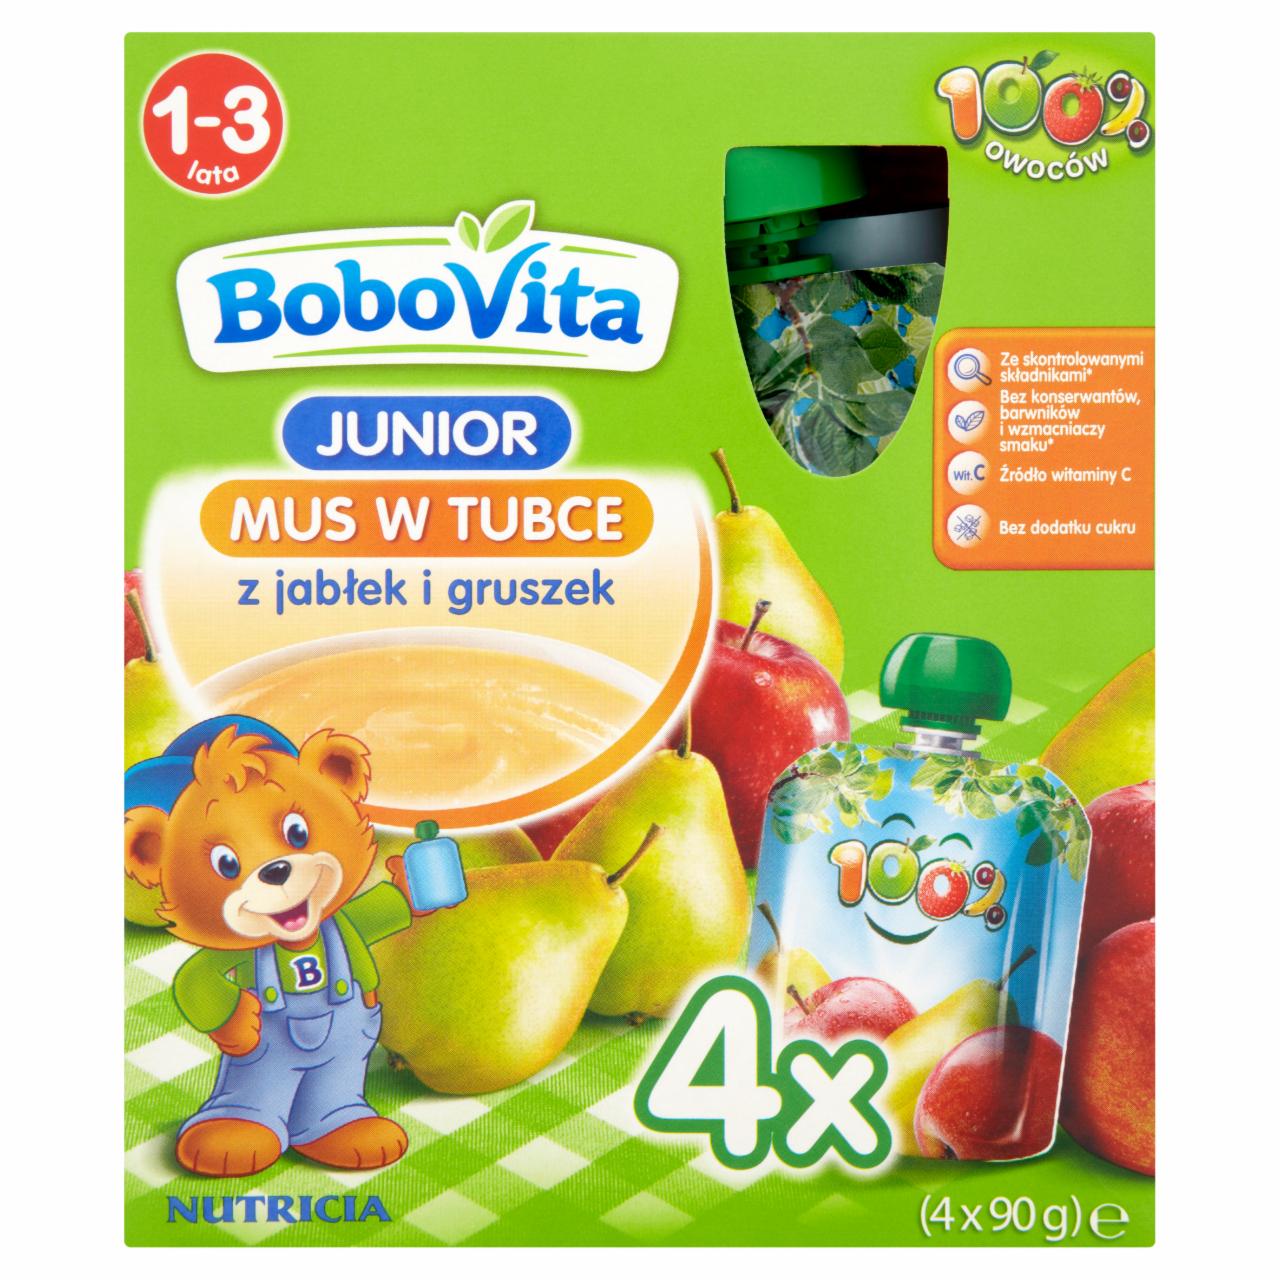 Zdjęcia - BoboVita Junior Mus w tubce z jabłek i gruszek 1-3 lata 4 x 90 g